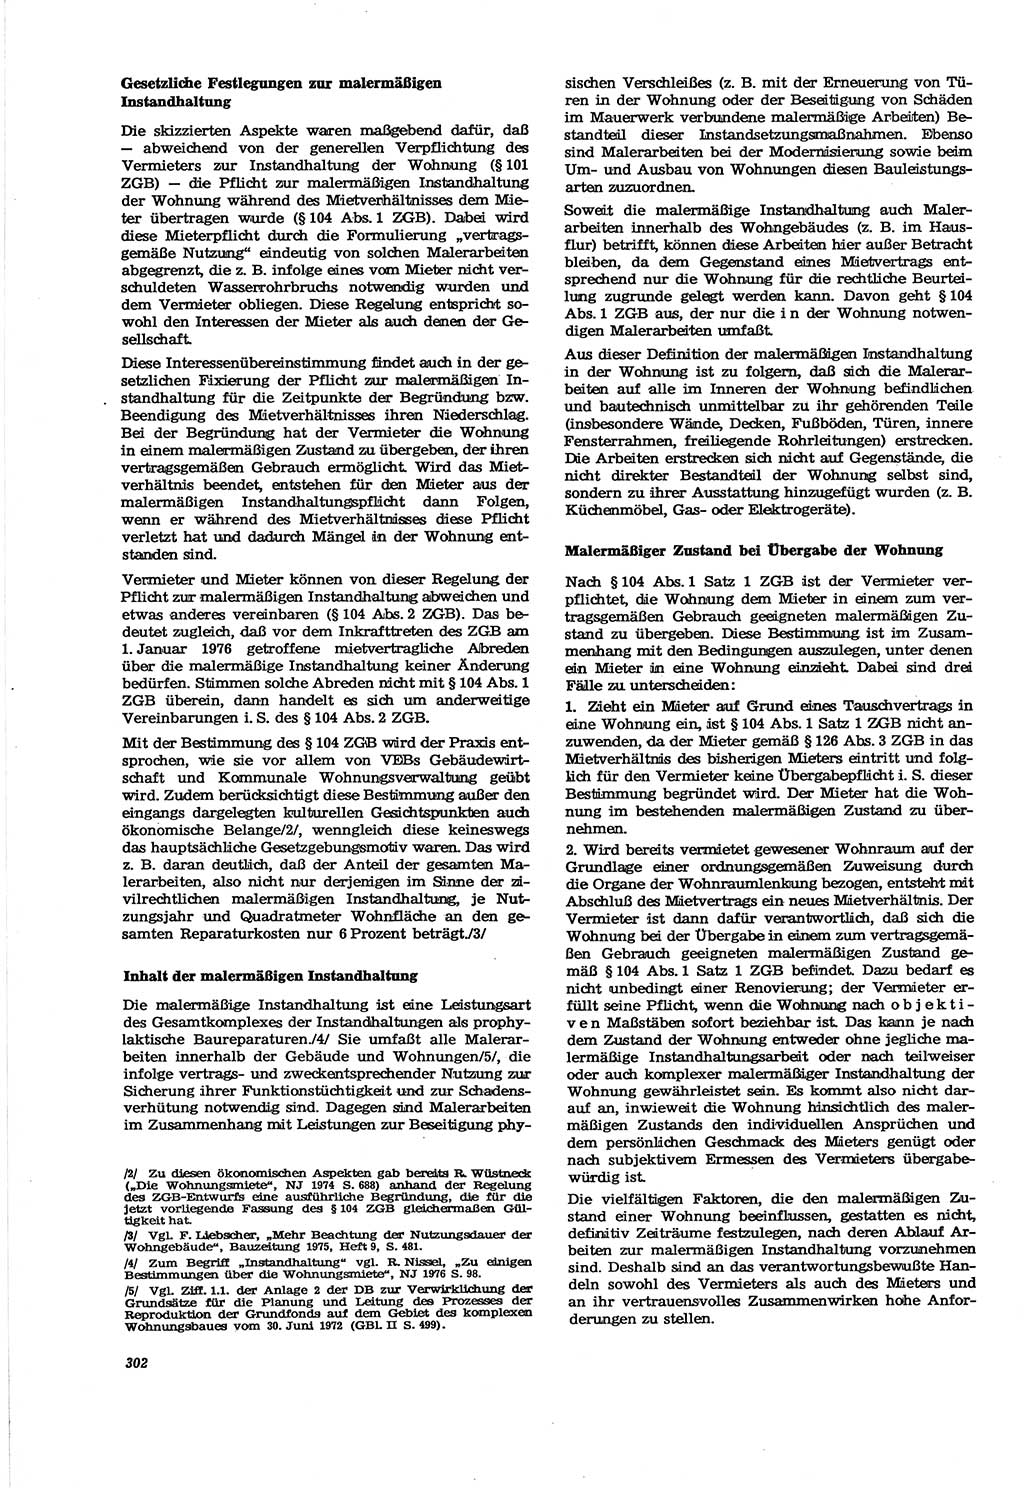 Neue Justiz (NJ), Zeitschrift für Recht und Rechtswissenschaft [Deutsche Demokratische Republik (DDR)], 30. Jahrgang 1976, Seite 302 (NJ DDR 1976, S. 302)